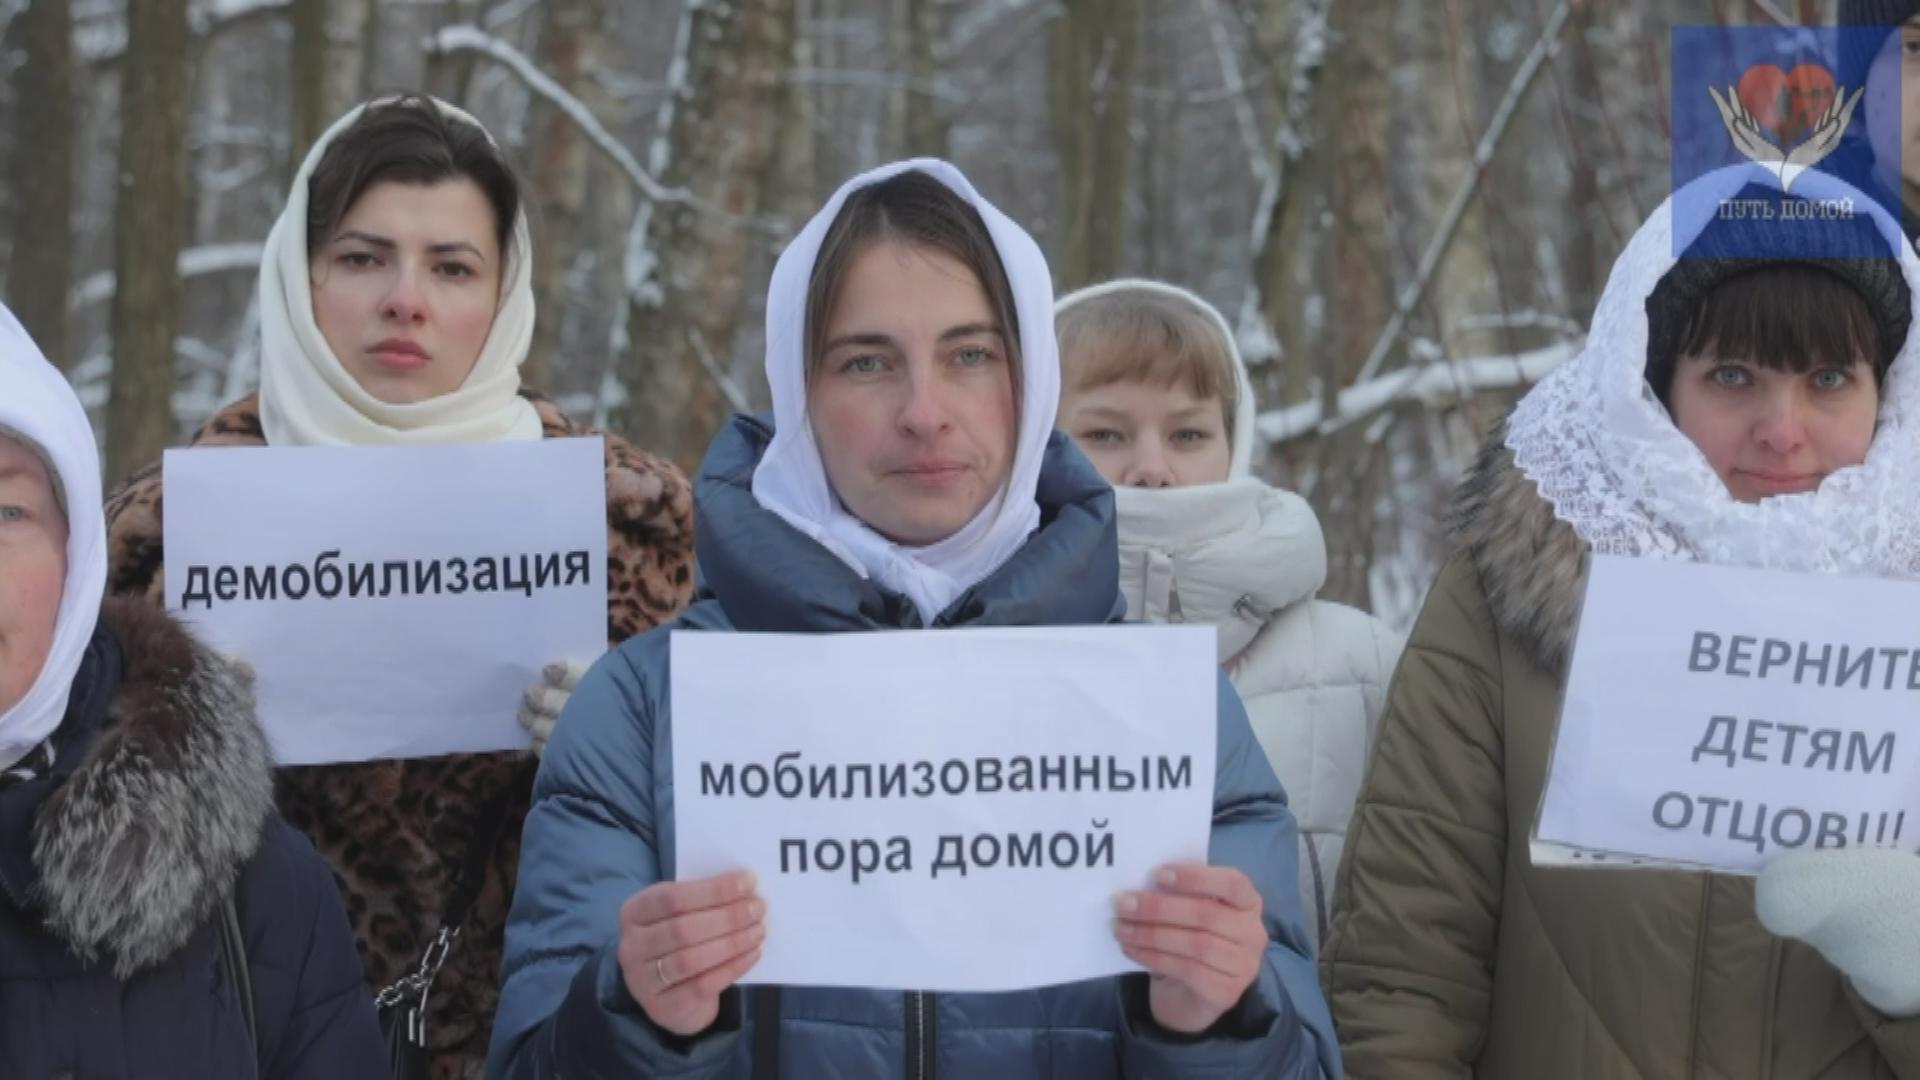 Russland: Frauen fordern Männer zurück